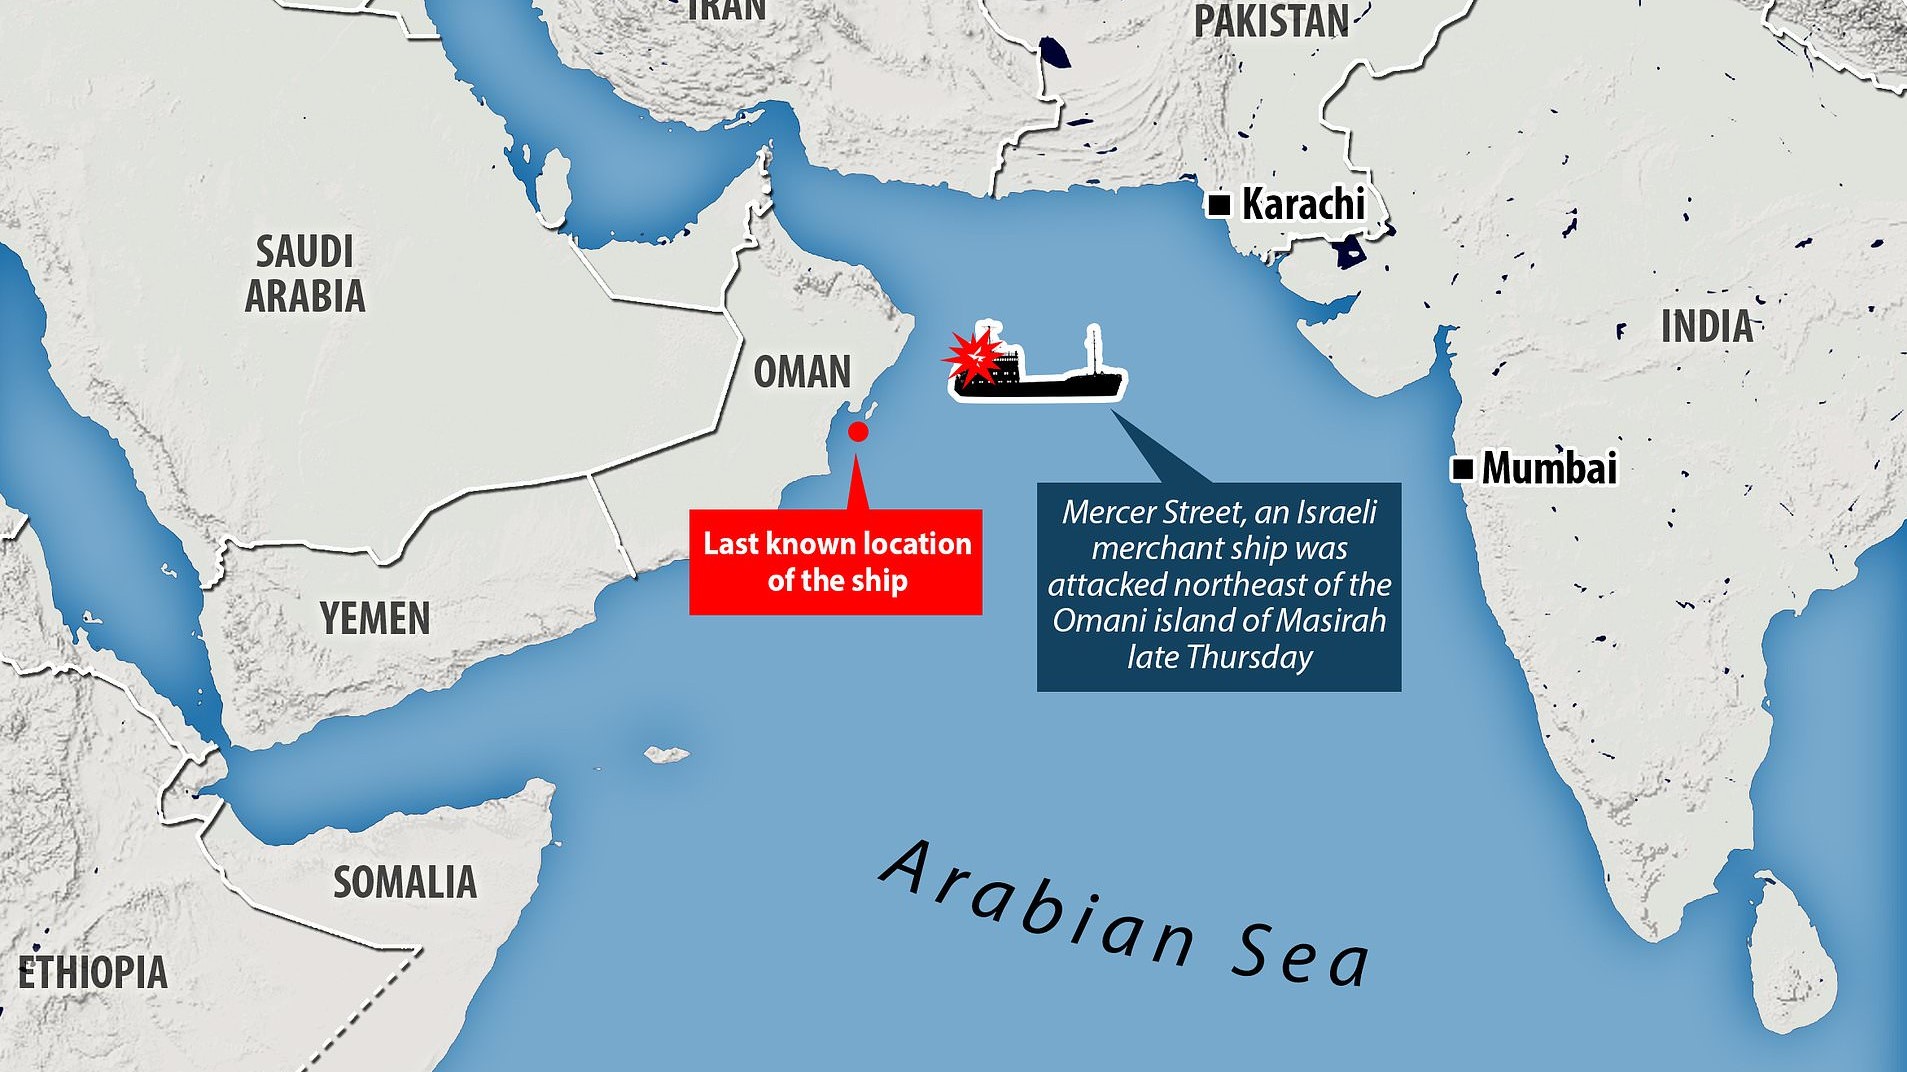 خريطة تبين مكان الهجوم على الناقلة (ميرسر ستريت) قبالة ساحل عمان 